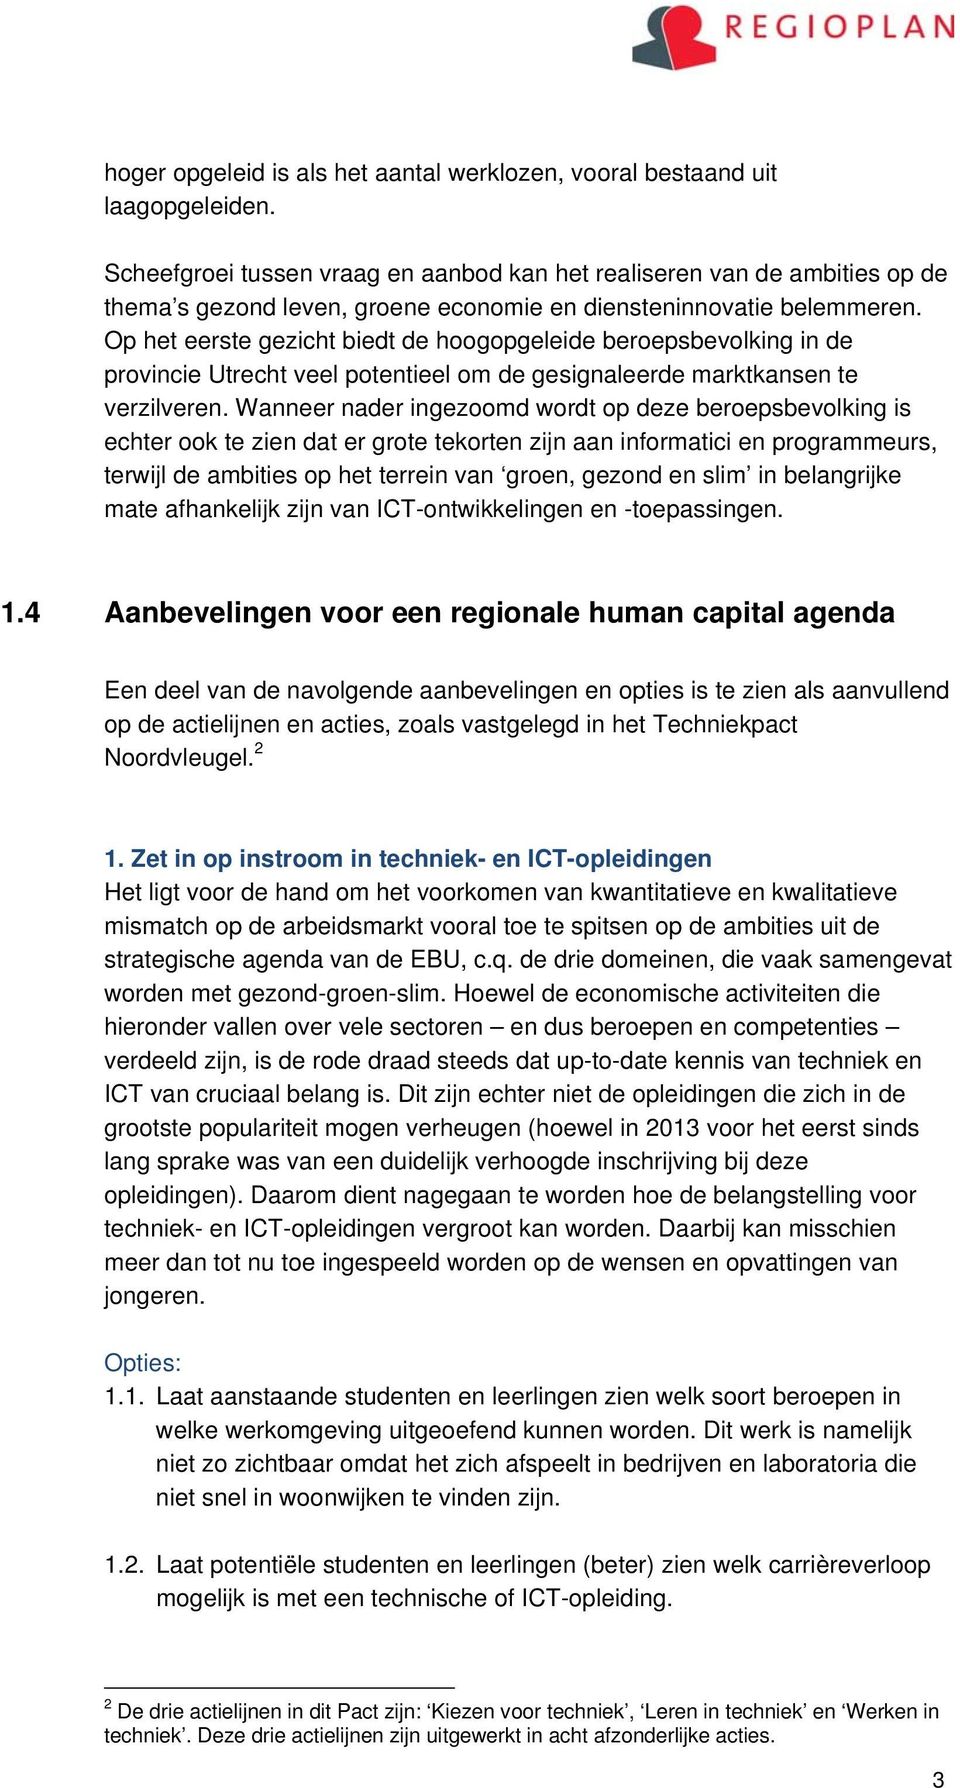 Op het eerste gezicht biedt de hoogopgeleide beroepsbevolking in de provincie Utrecht veel potentieel om de gesignaleerde marktkansen te verzilveren.